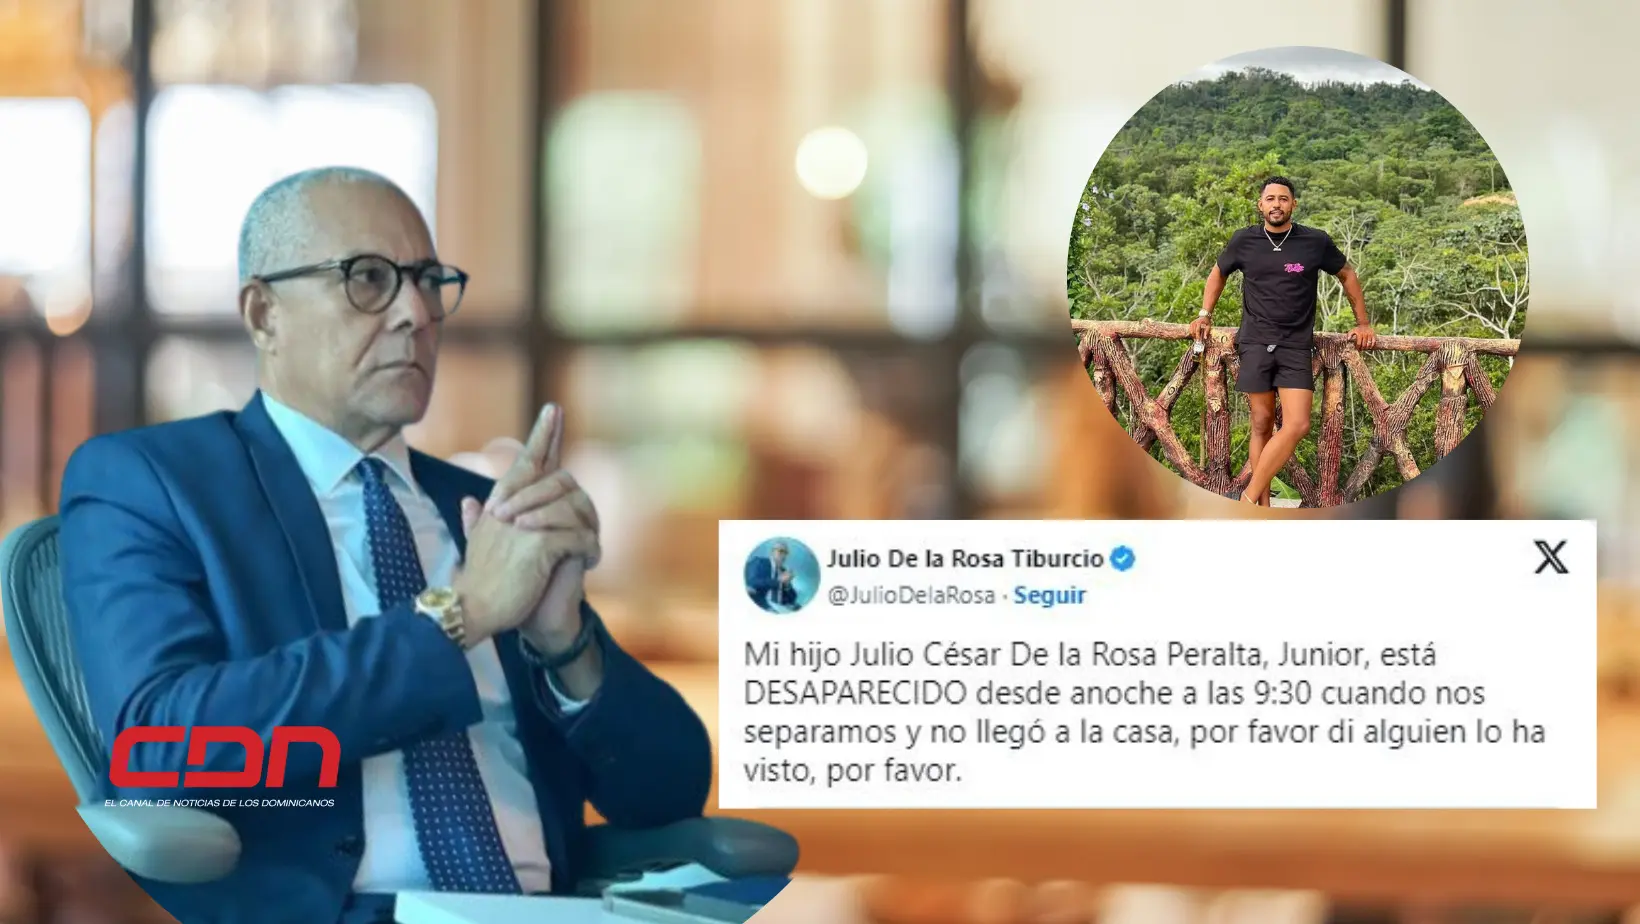 Presidente de Adocco reporta desaparición de su hijo